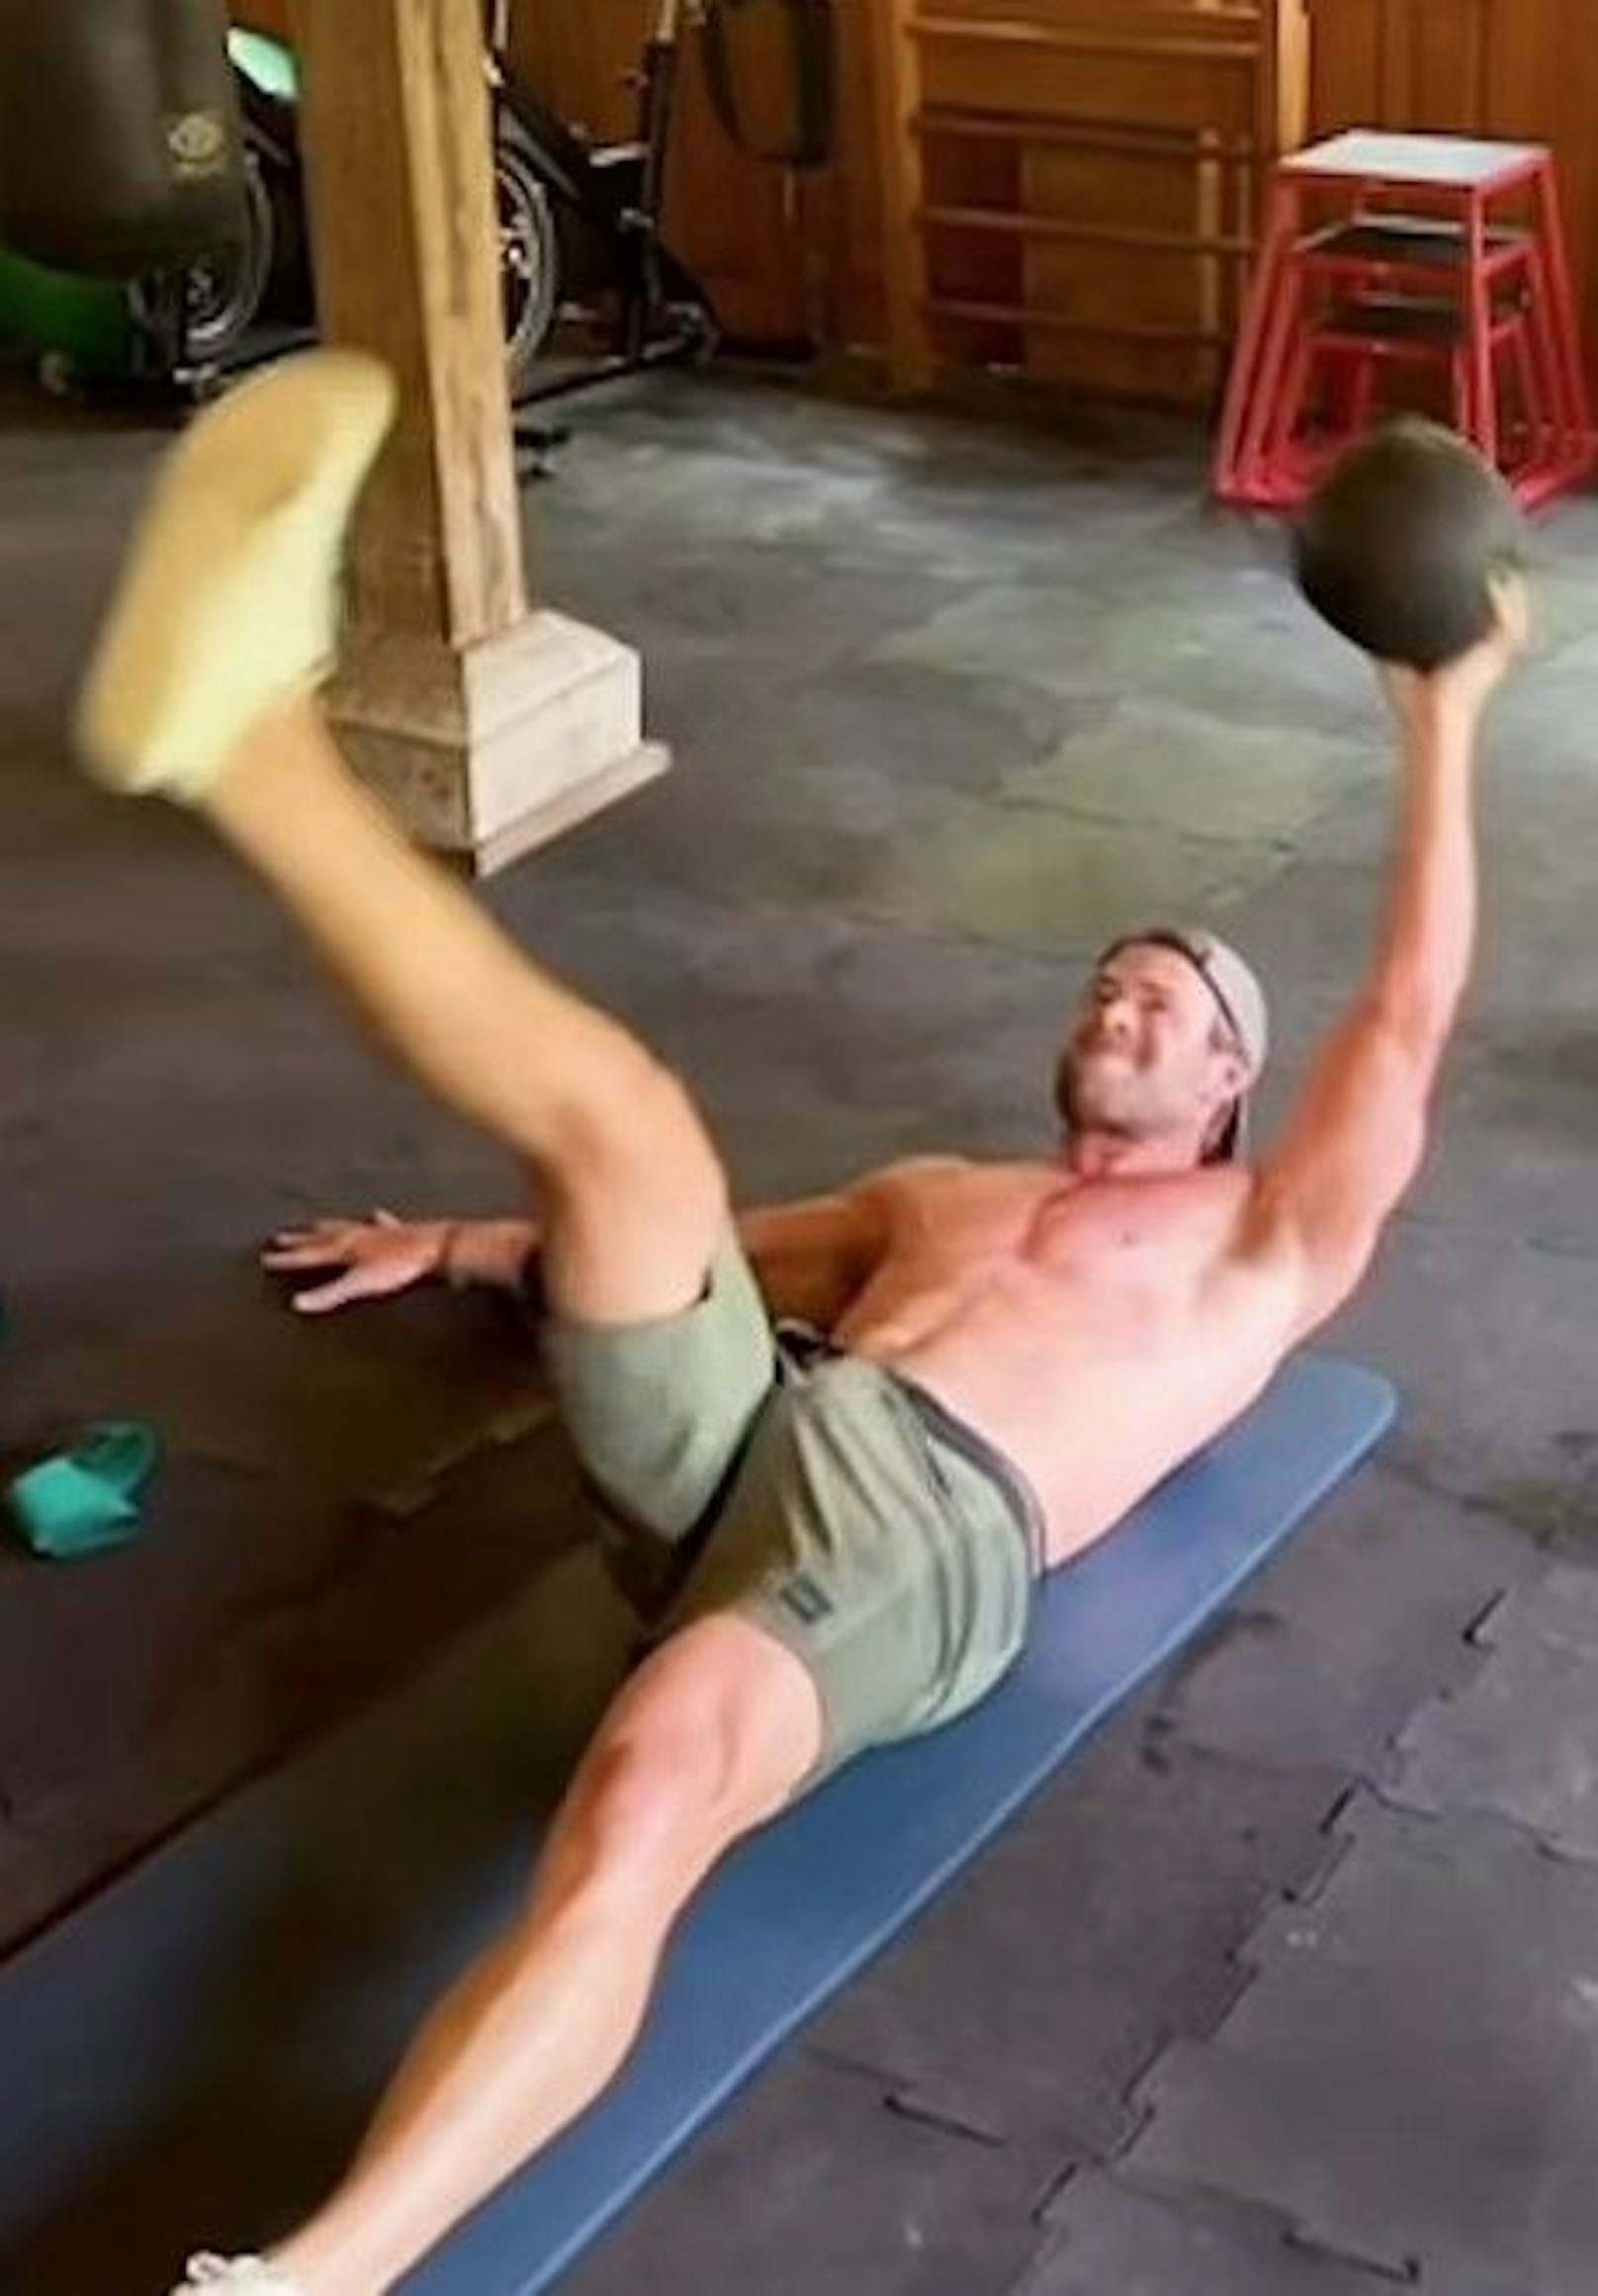 Chris Hemsworth wollte eigentlich sein hartes Training zeigen, seine Fans diskutieren allerdings in den Kommentaren lieber seinen Schritt.